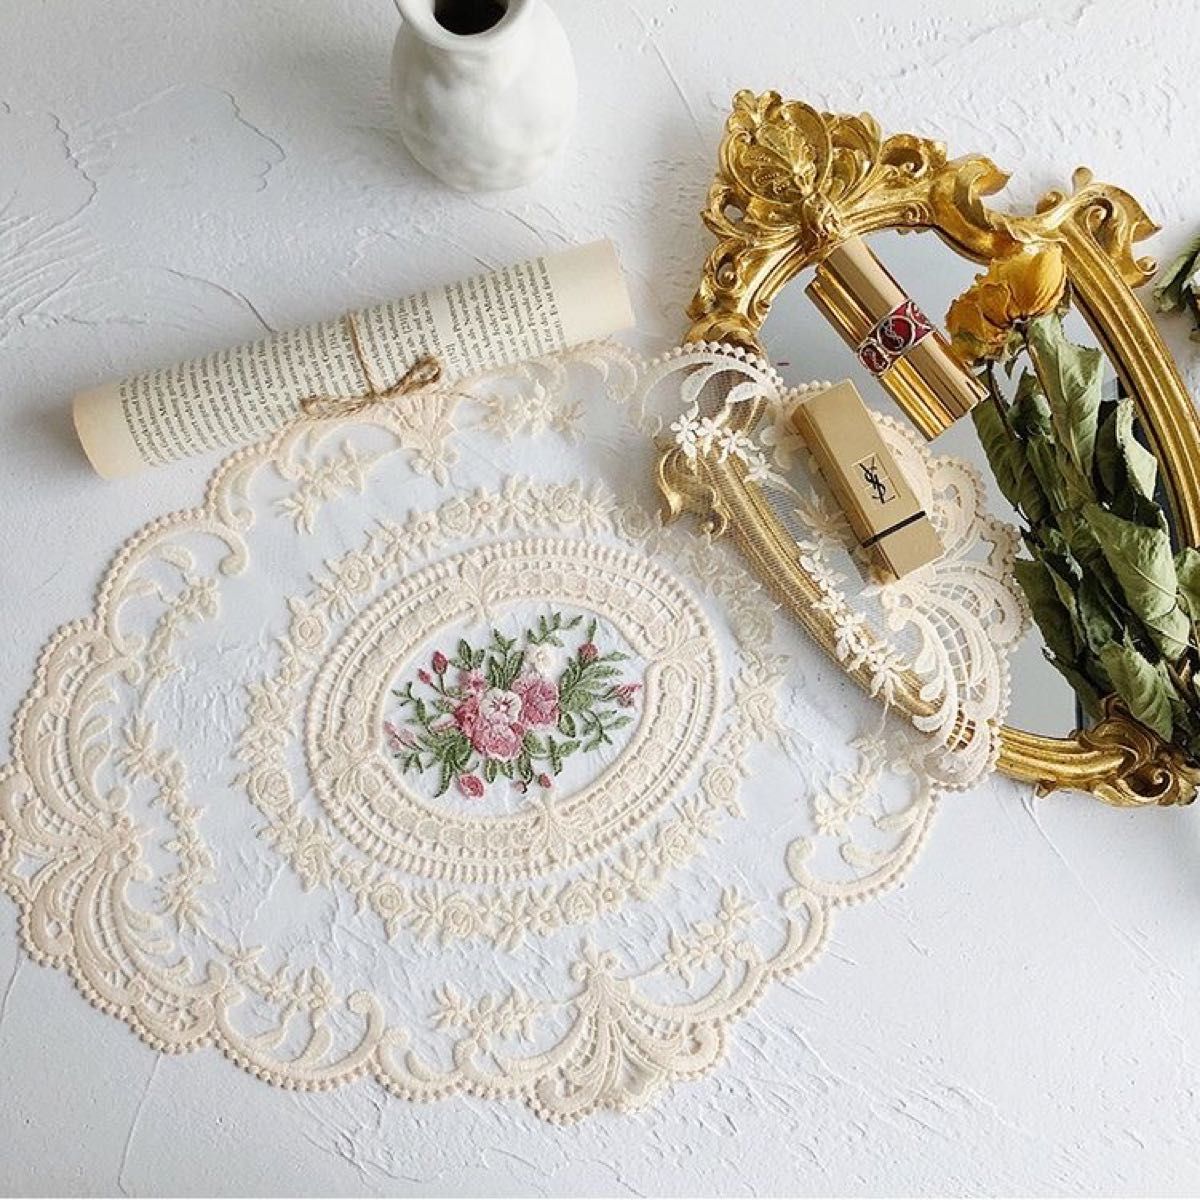 新品未使用品 テーブルクロス レース 花柄 刺繍 ベージュ テーブルマット 北欧 インテリア 小物 おしゃれ 飾り物